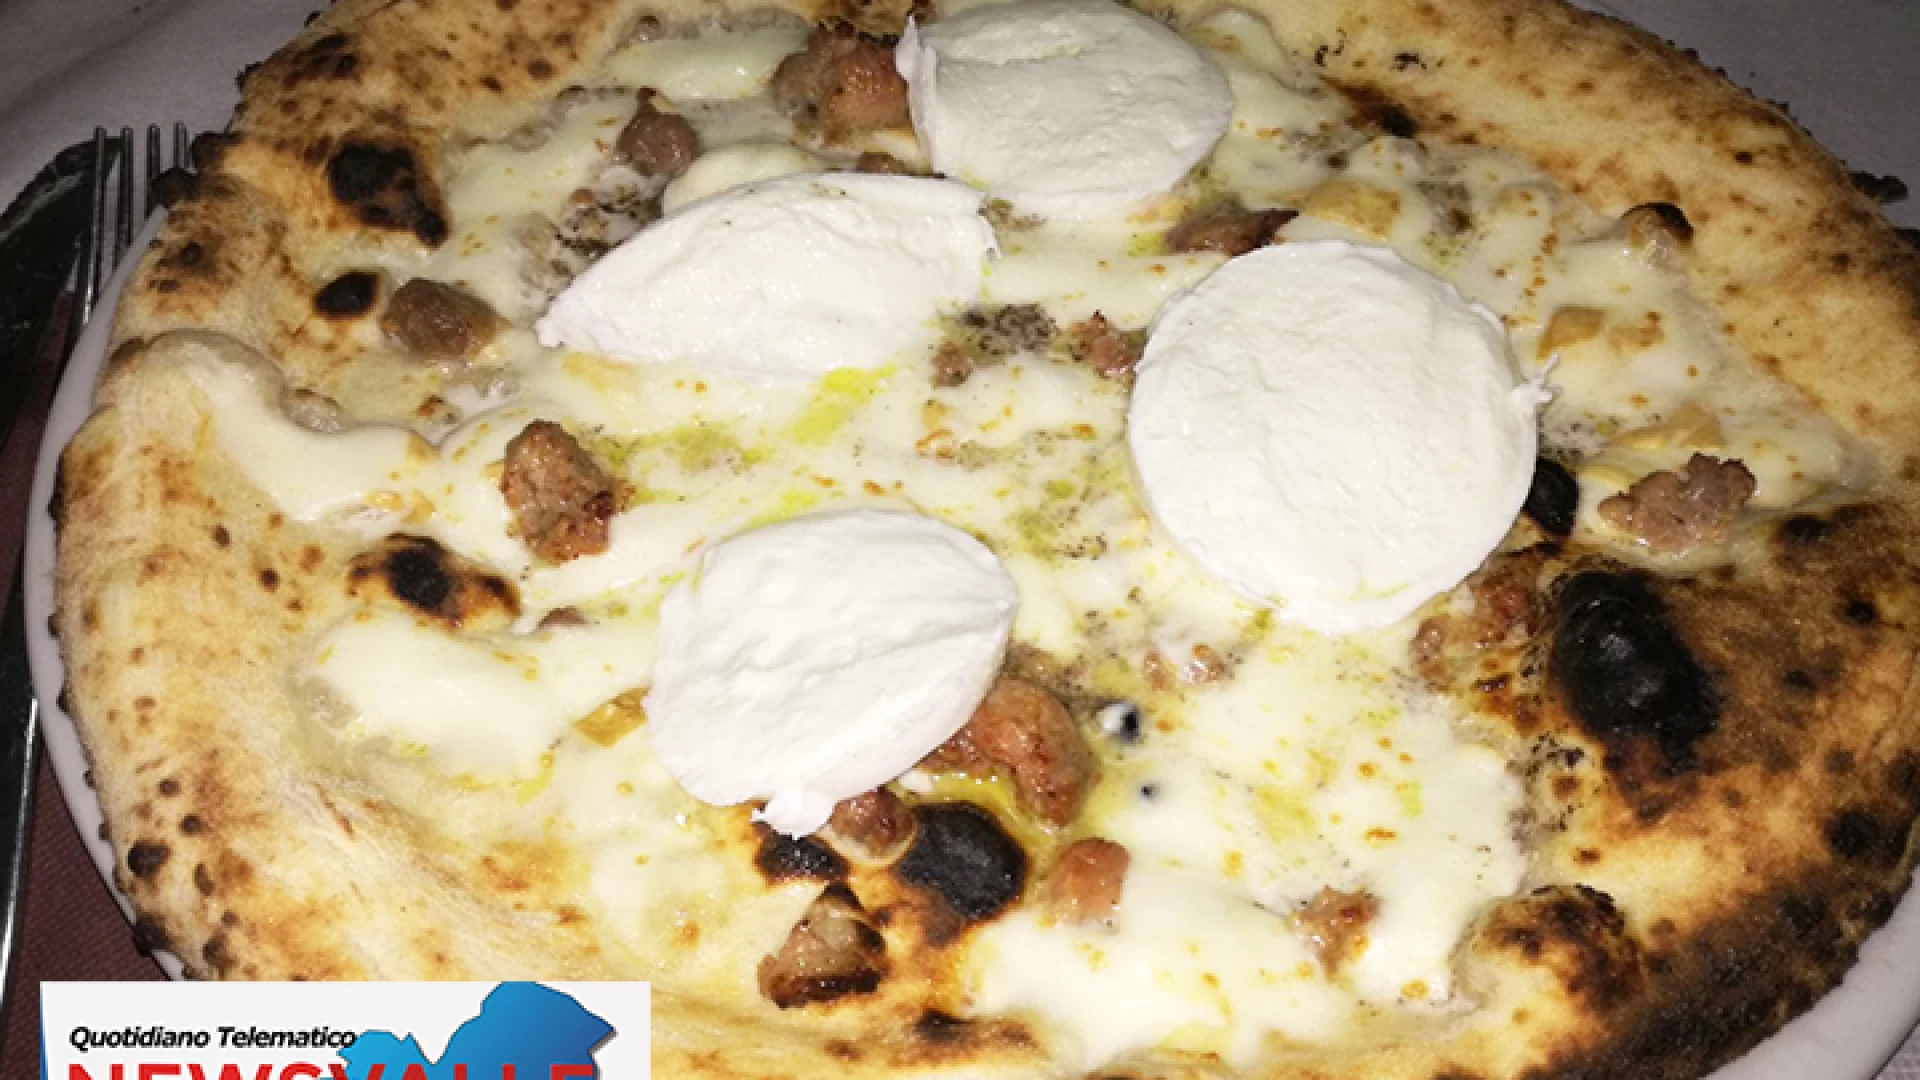 Venafro: a Napul’è la cena con delitto. Ancora un venerdì da trascorrere nel “mistero” ed in compagnia di una fantastica pizza napoletana.